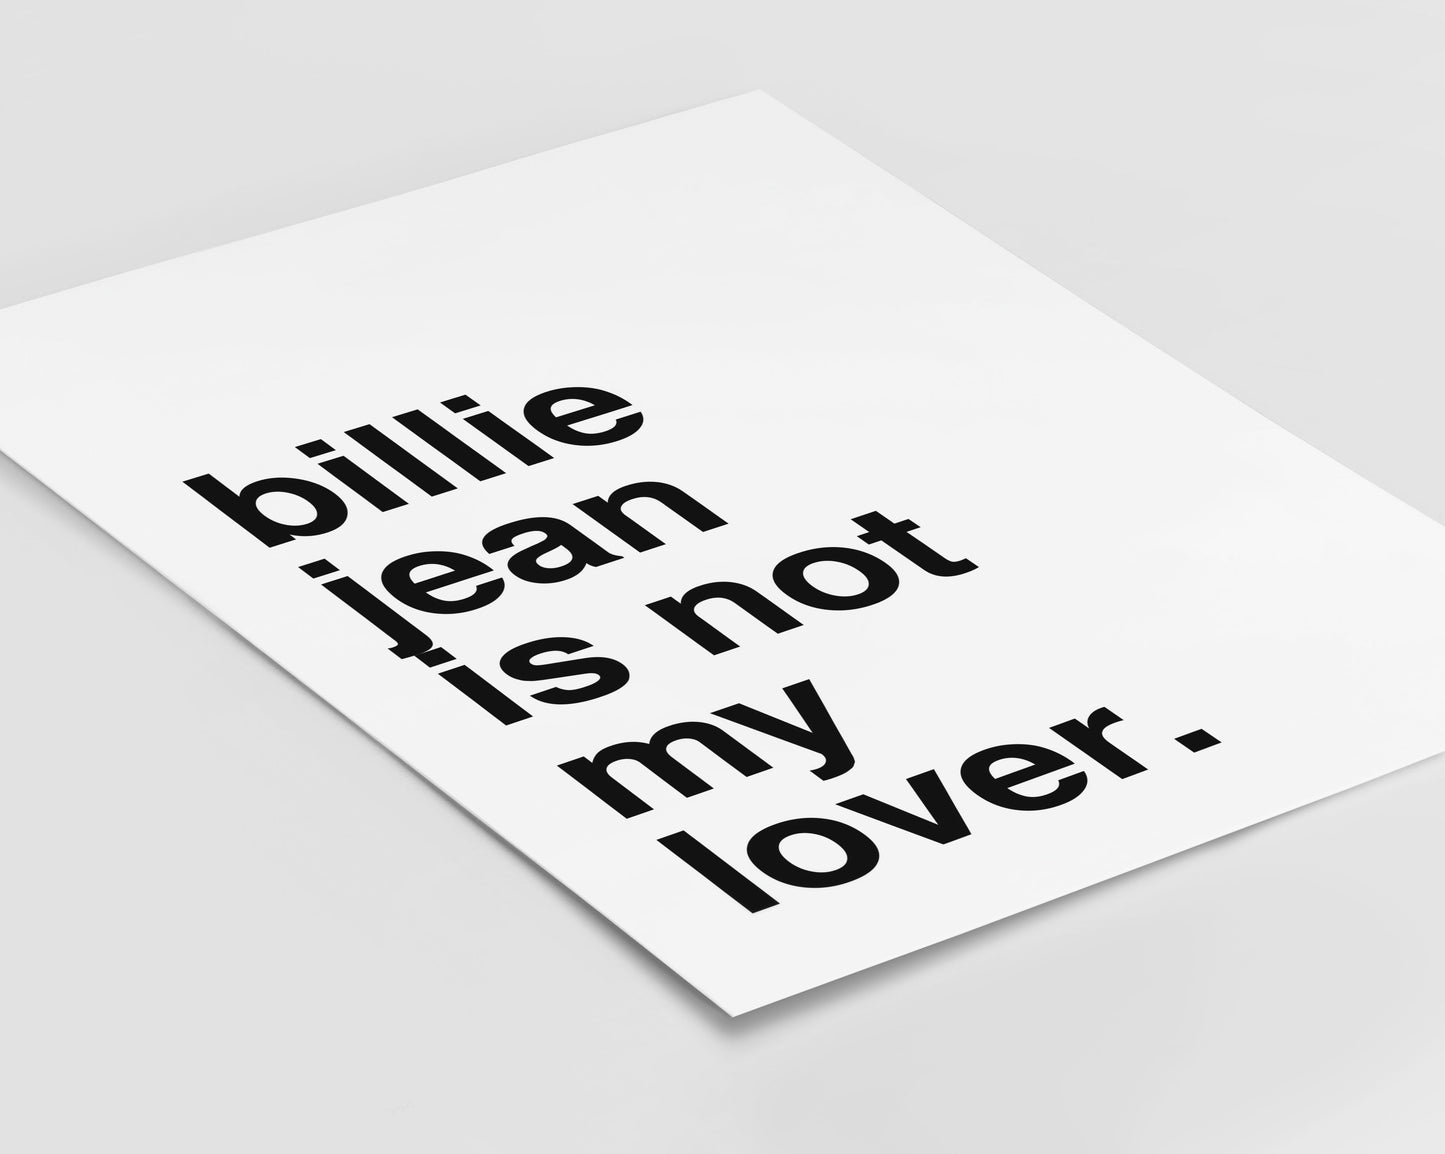 Billie Jean Statement White Print